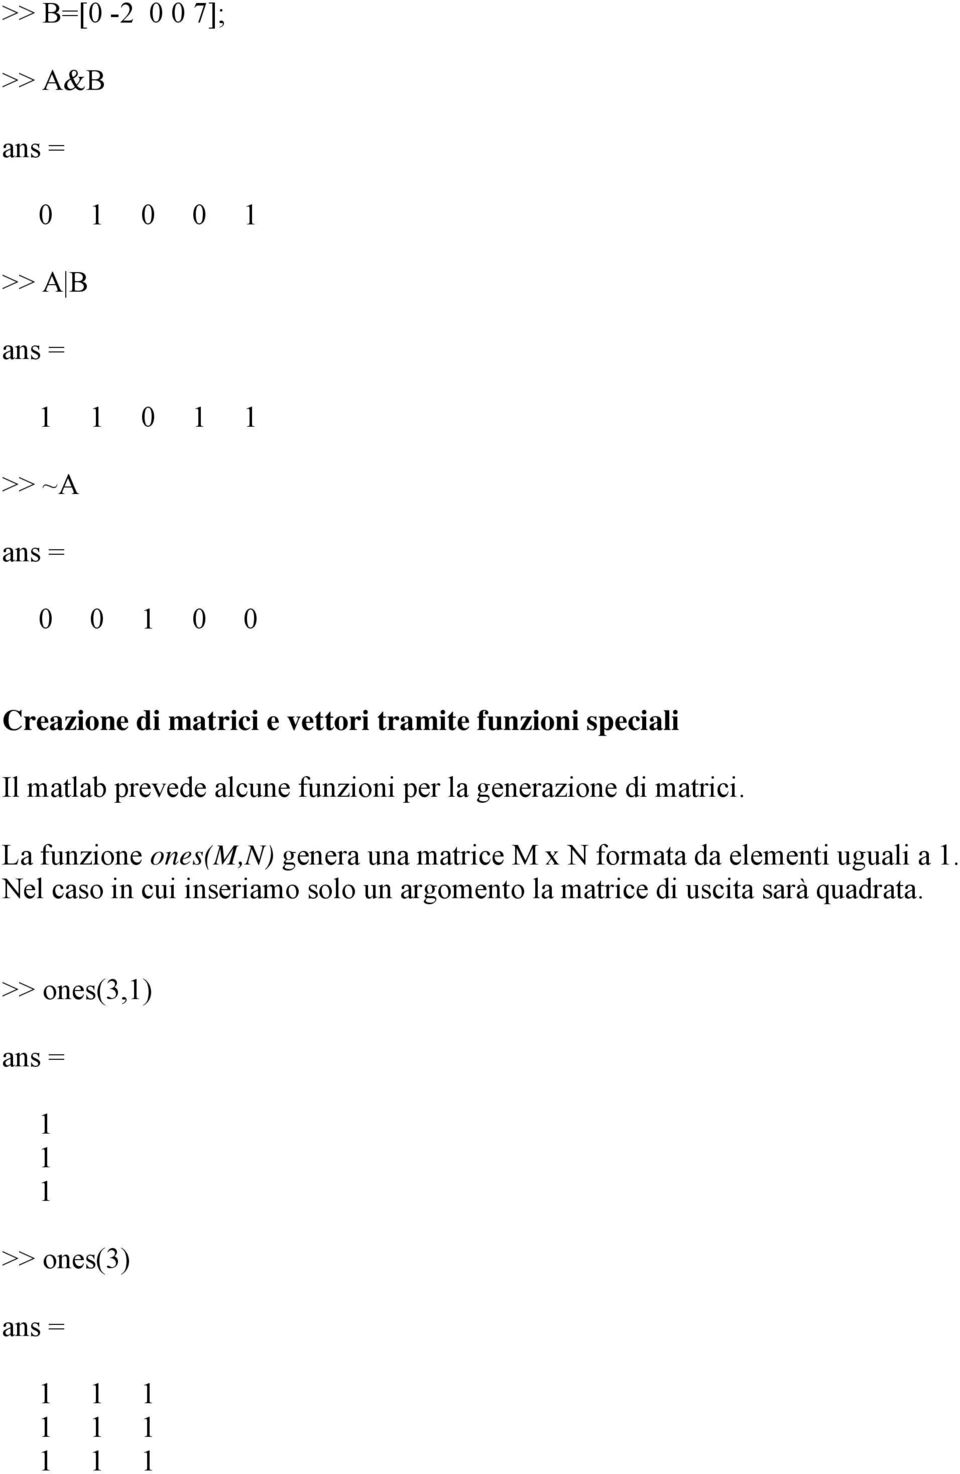 La funzione ones(m,n) genera una matrice M x N formata da elementi uguali a 1.